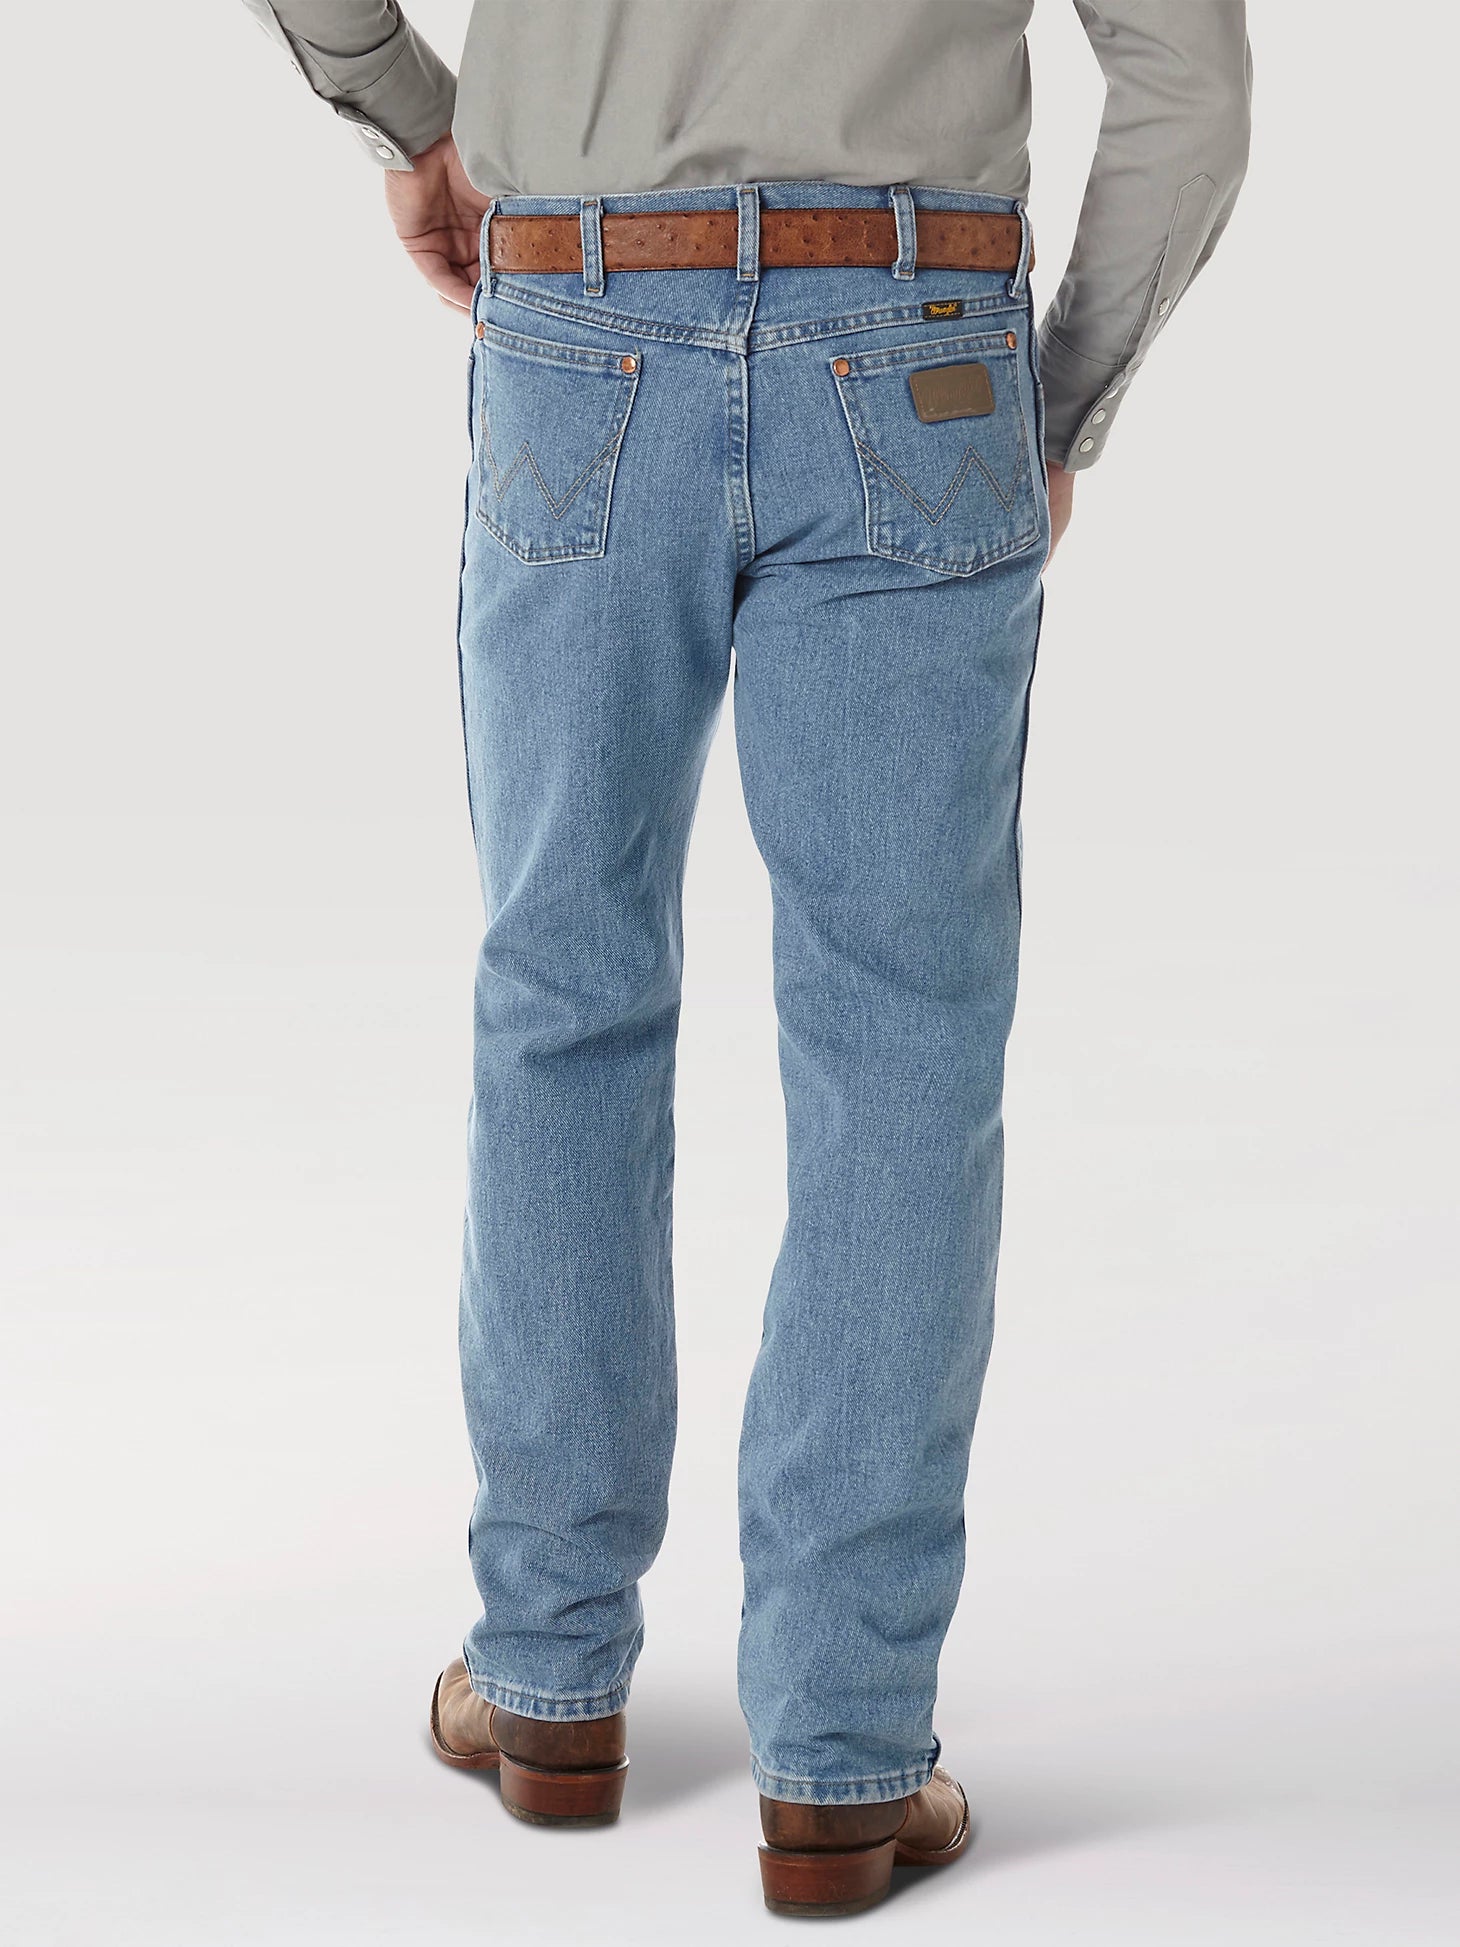 Jeans Wrangler Original Fit Antique Wash Caballero